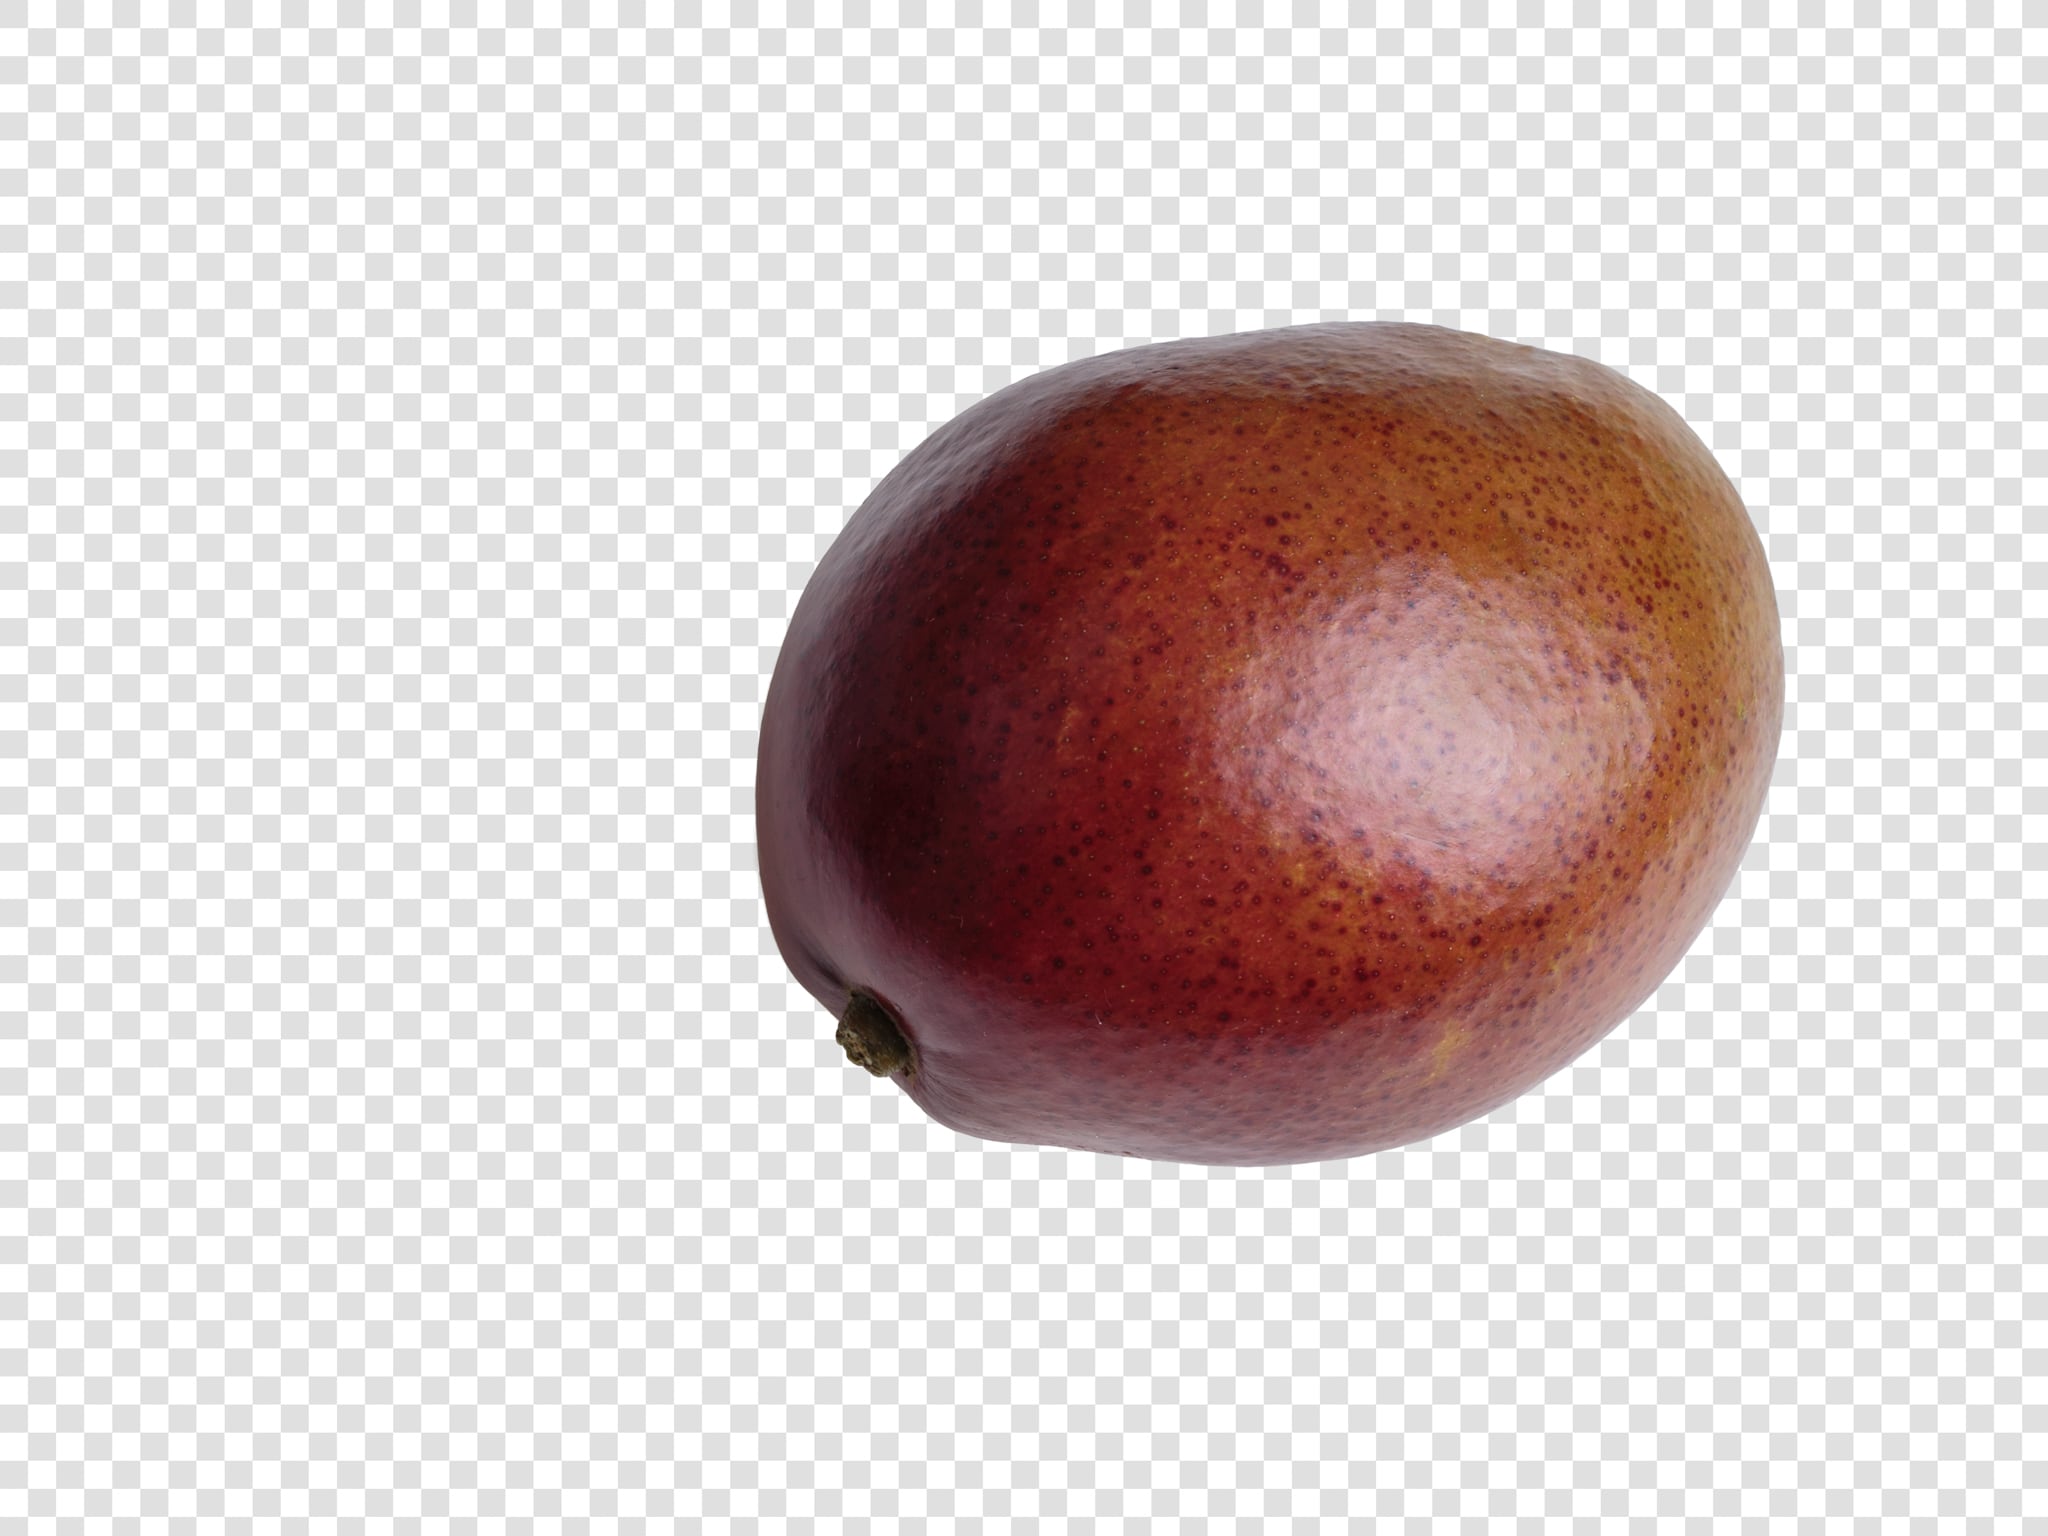 Mango PSD layered image